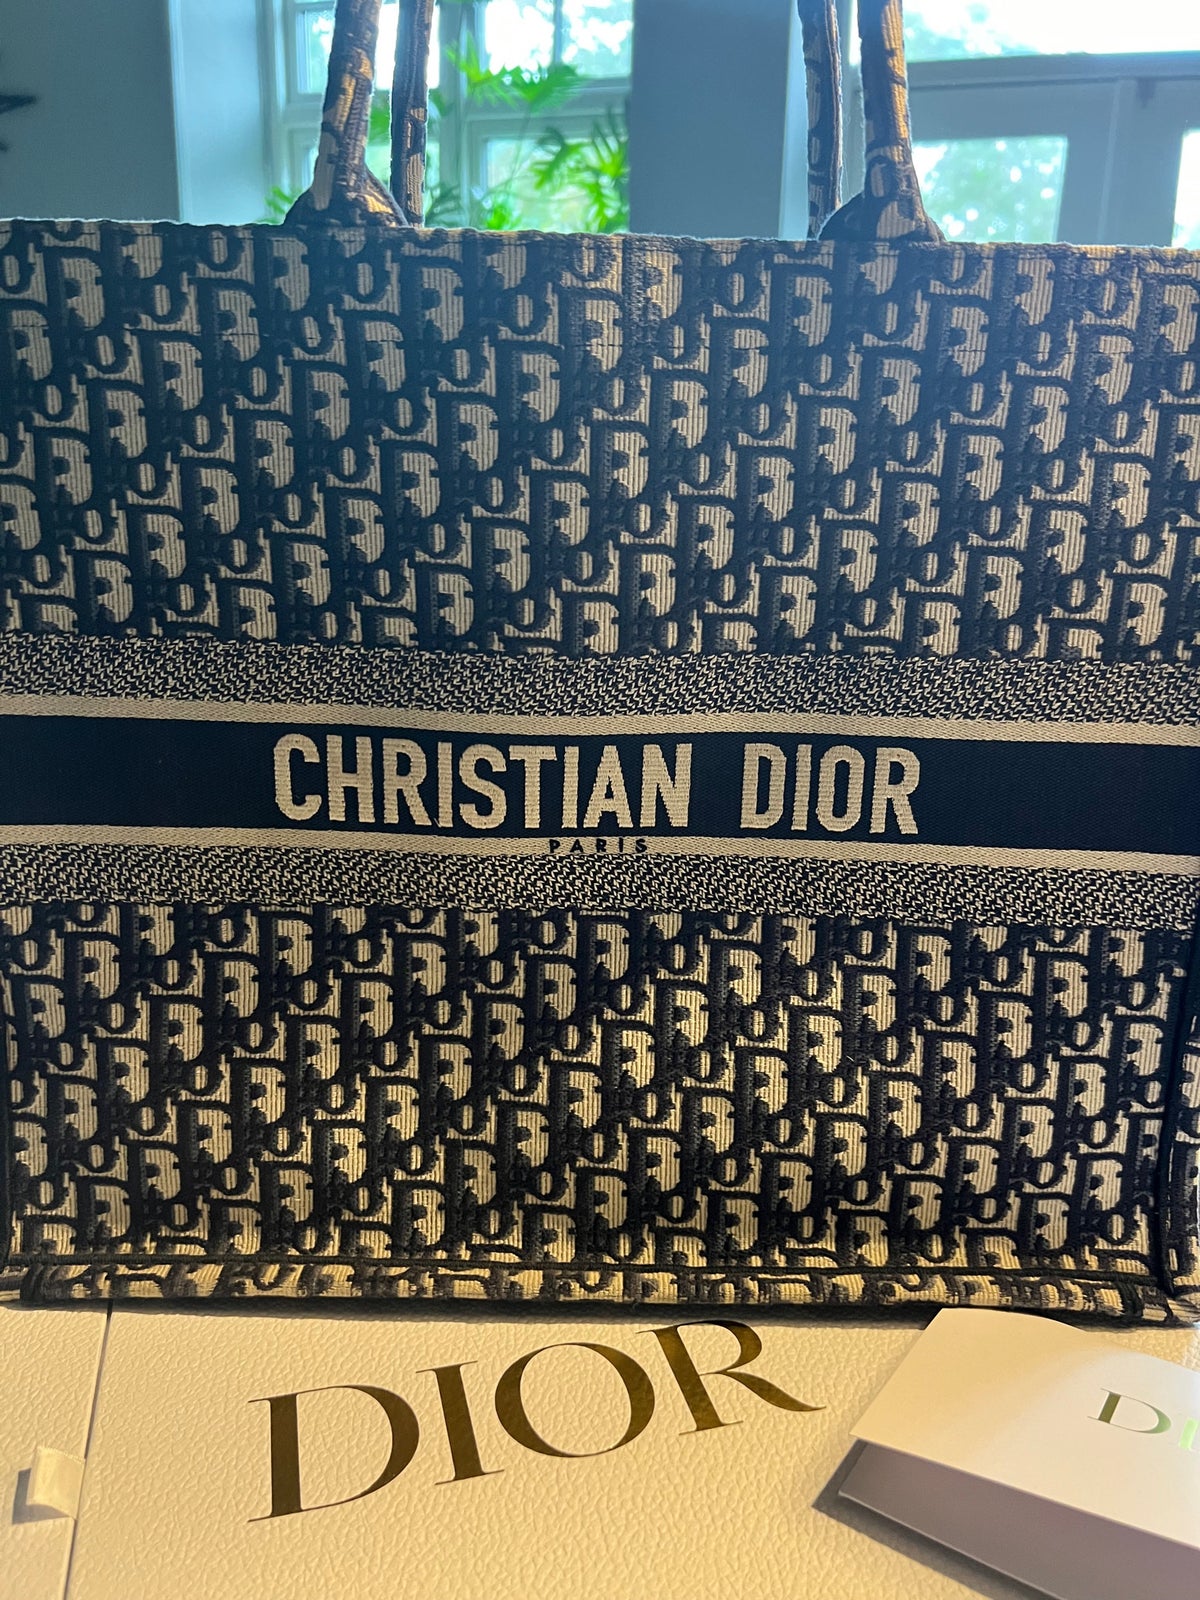 Folde boks følgeslutning Shopper, Christian Dior, andet materiale – dba.dk – Køb og Salg af Nyt og  Brugt